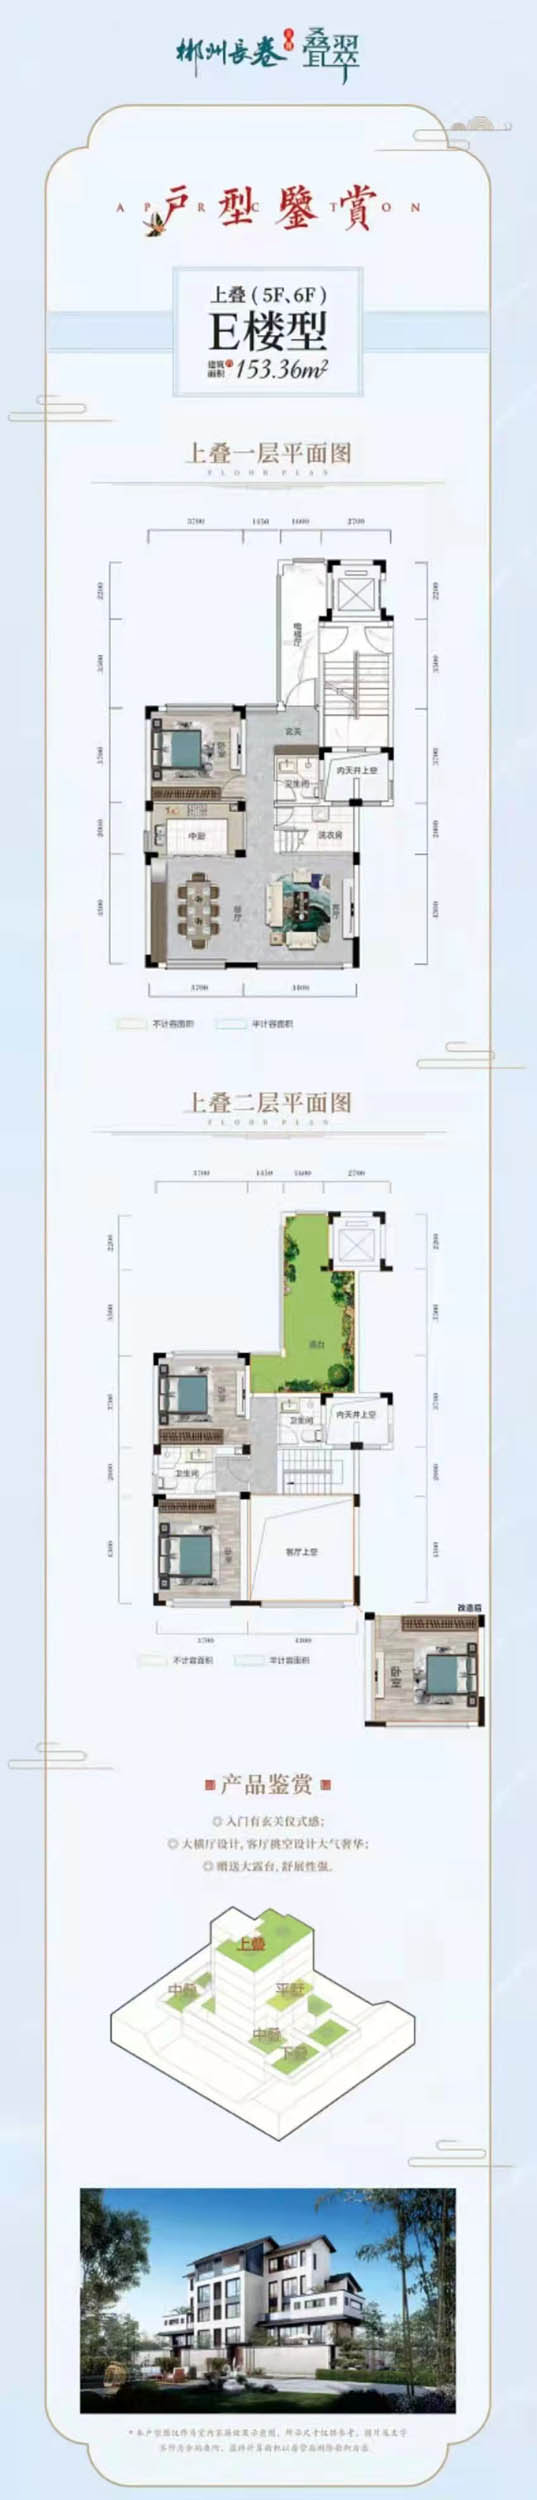 郴州苏仙区长卷二期为您提供E楼型上叠图片详情鉴赏